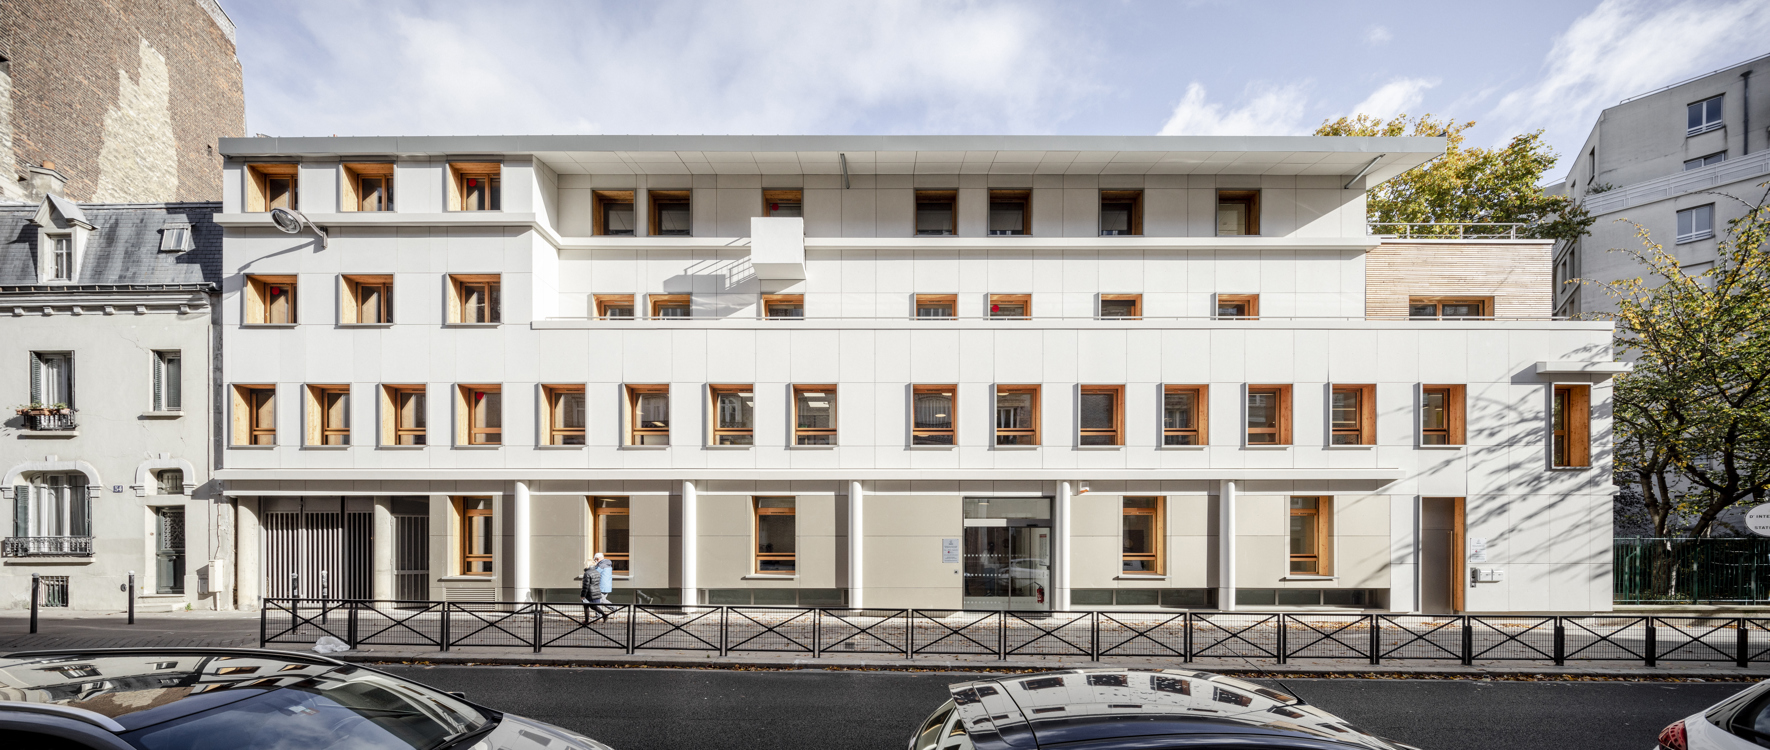 La façade ventilée : une façade intelligente pour des bâtiments plus économes en énergie et plus confortables